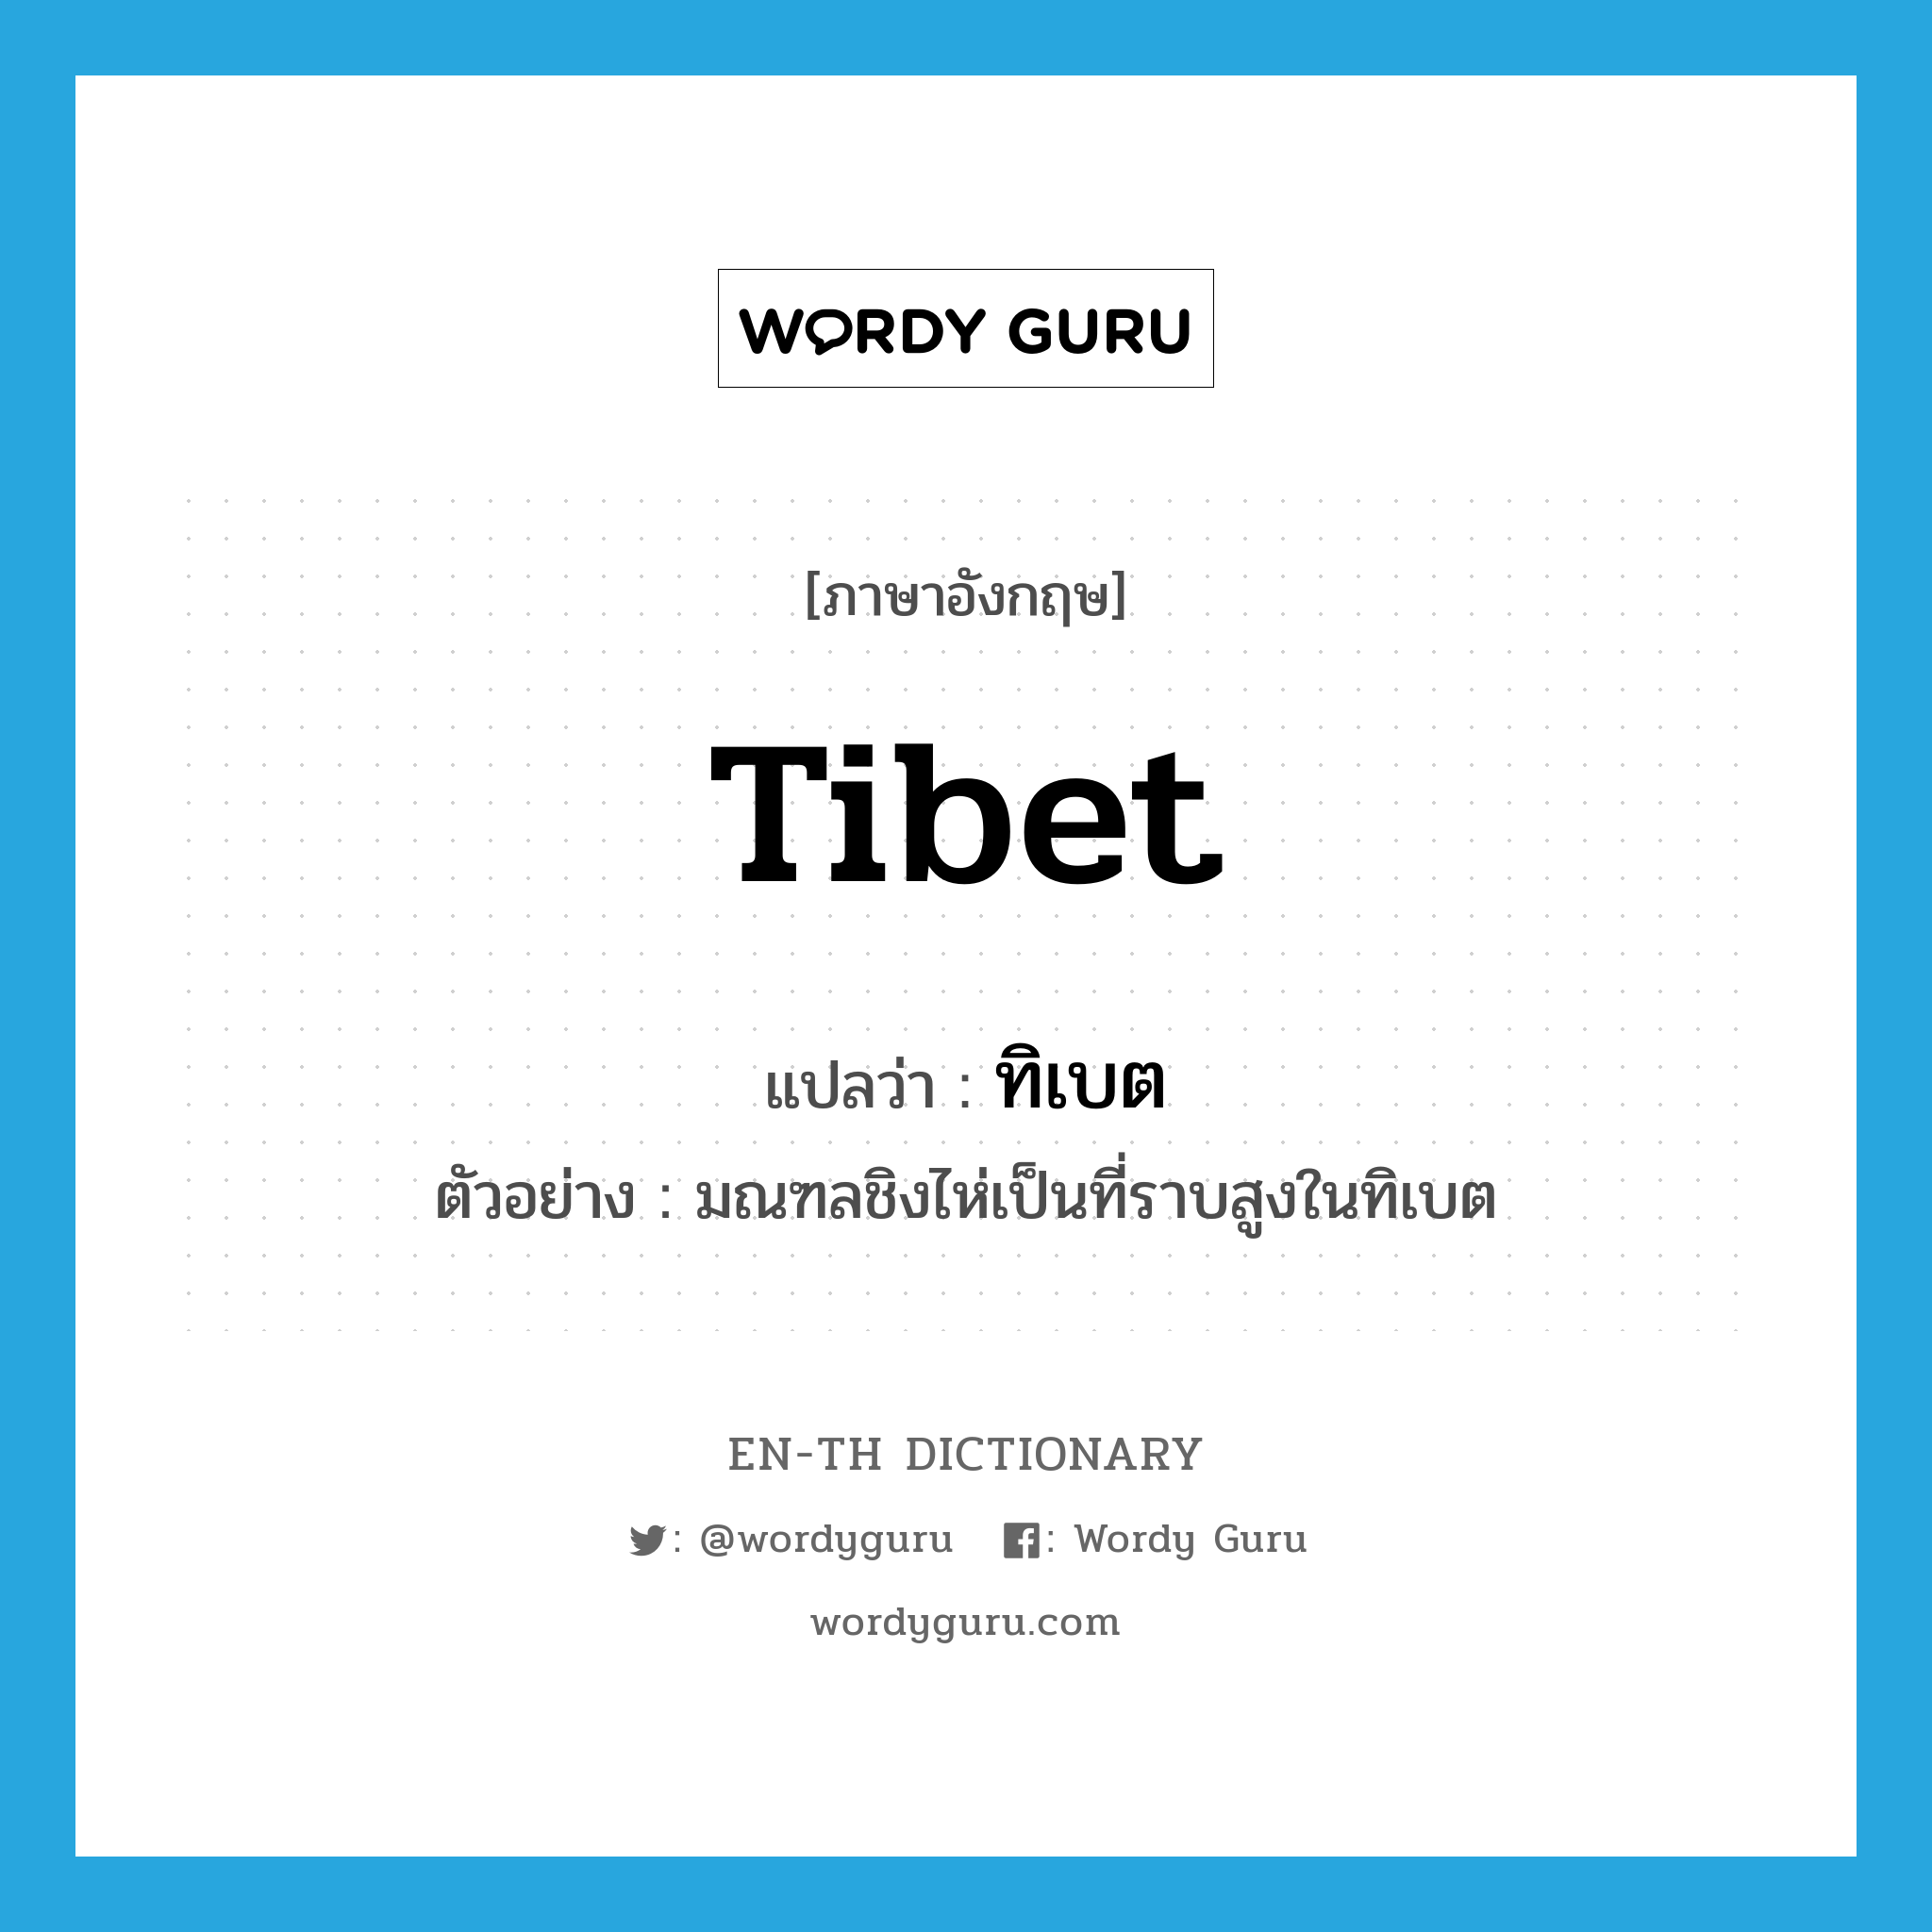 ทิเบต ภาษาอังกฤษ?, คำศัพท์ภาษาอังกฤษ ทิเบต แปลว่า Tibet ประเภท N ตัวอย่าง มณฑลชิงไห่เป็นที่ราบสูงในทิเบต หมวด N